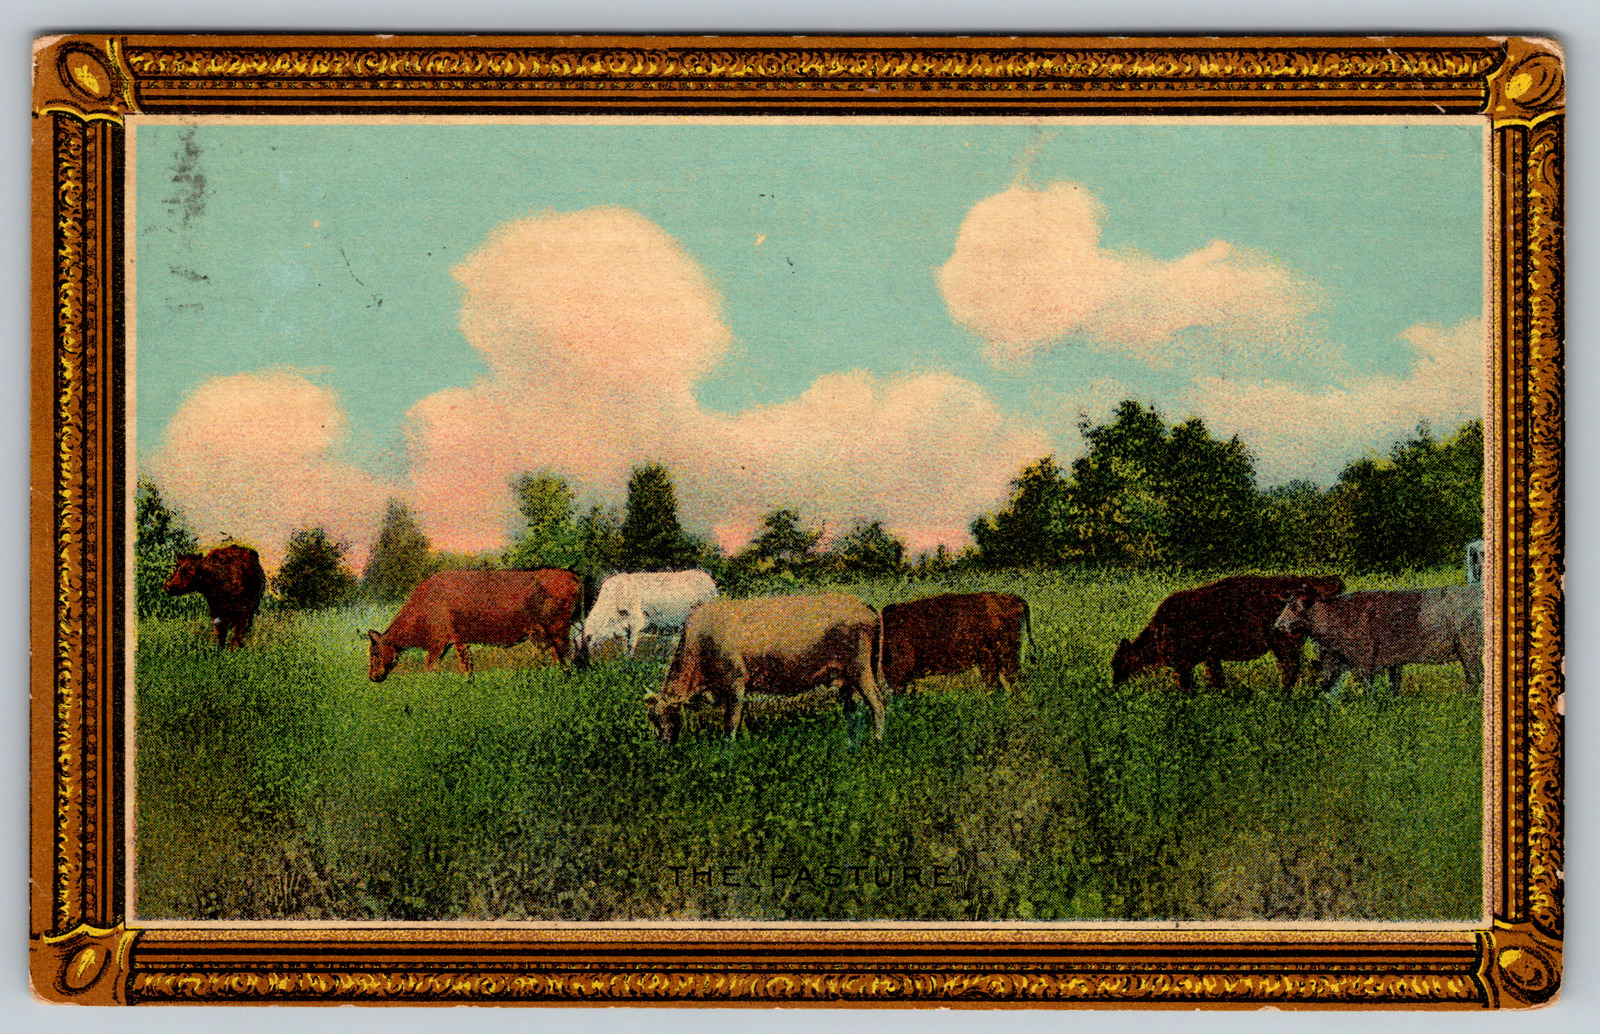 c1910s Cattle Cow Herd Art Farm Antique Postcard